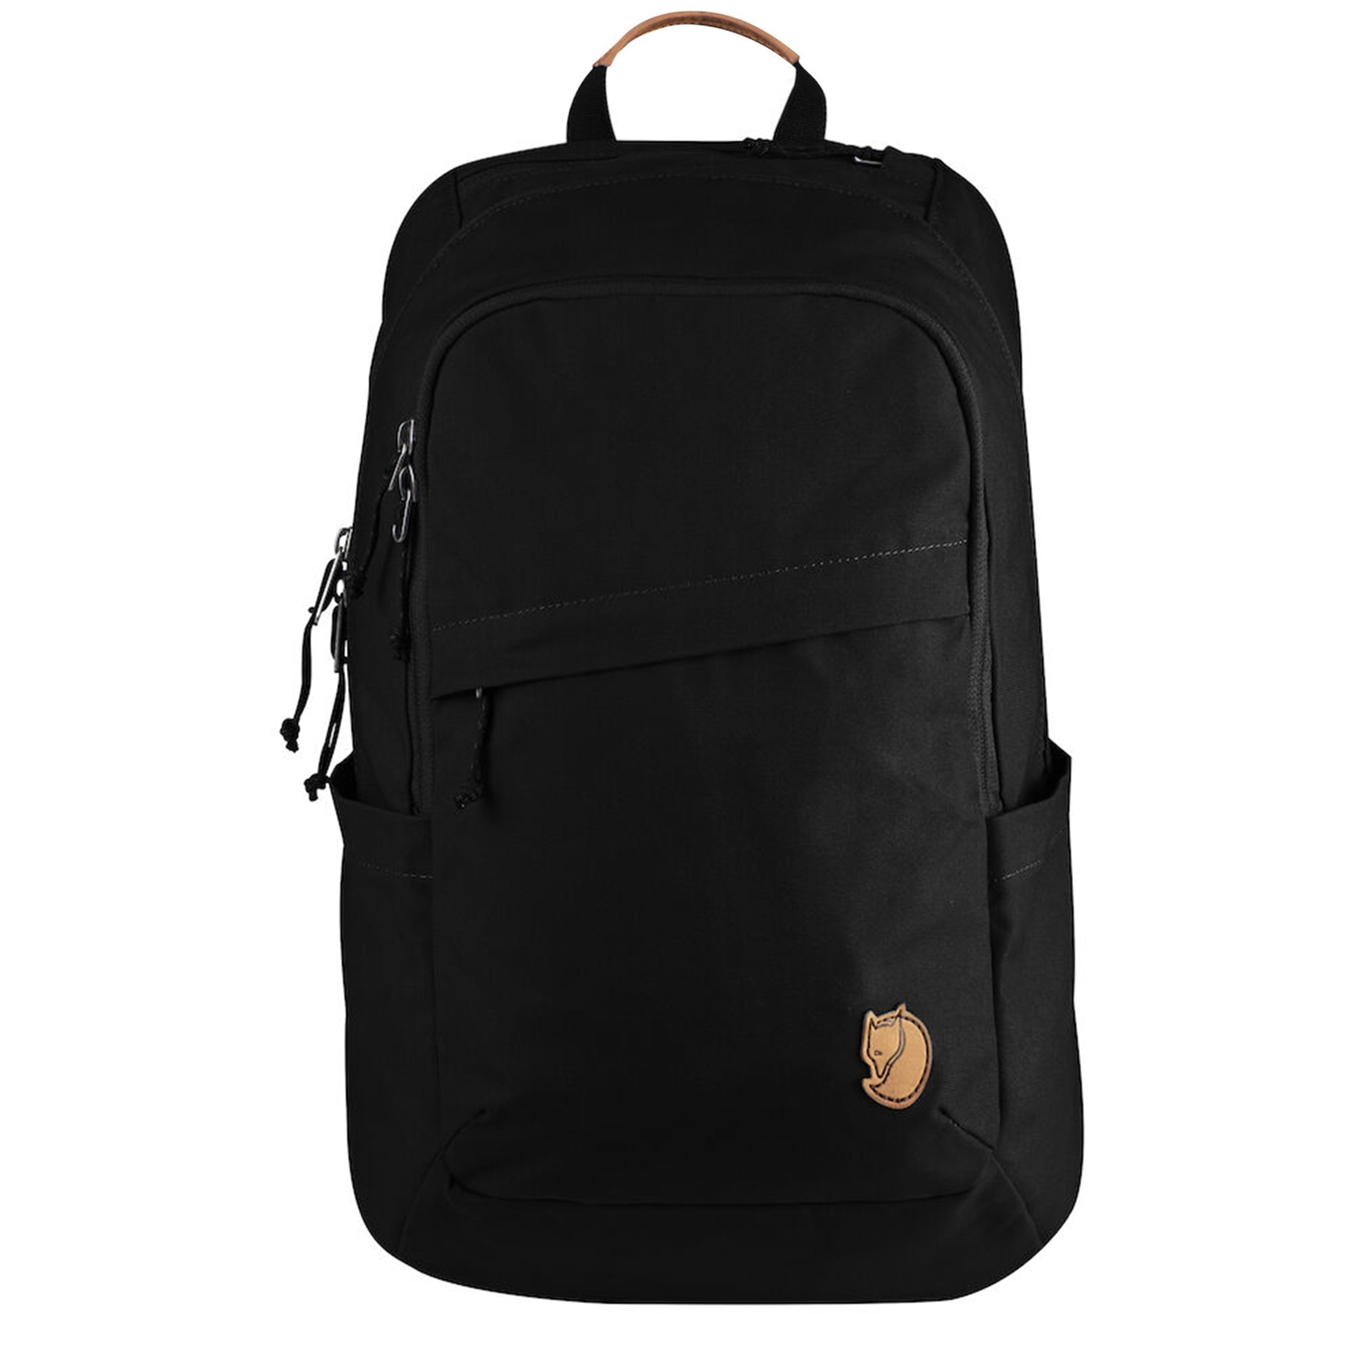 Fjallraven Raven 20L black backpack